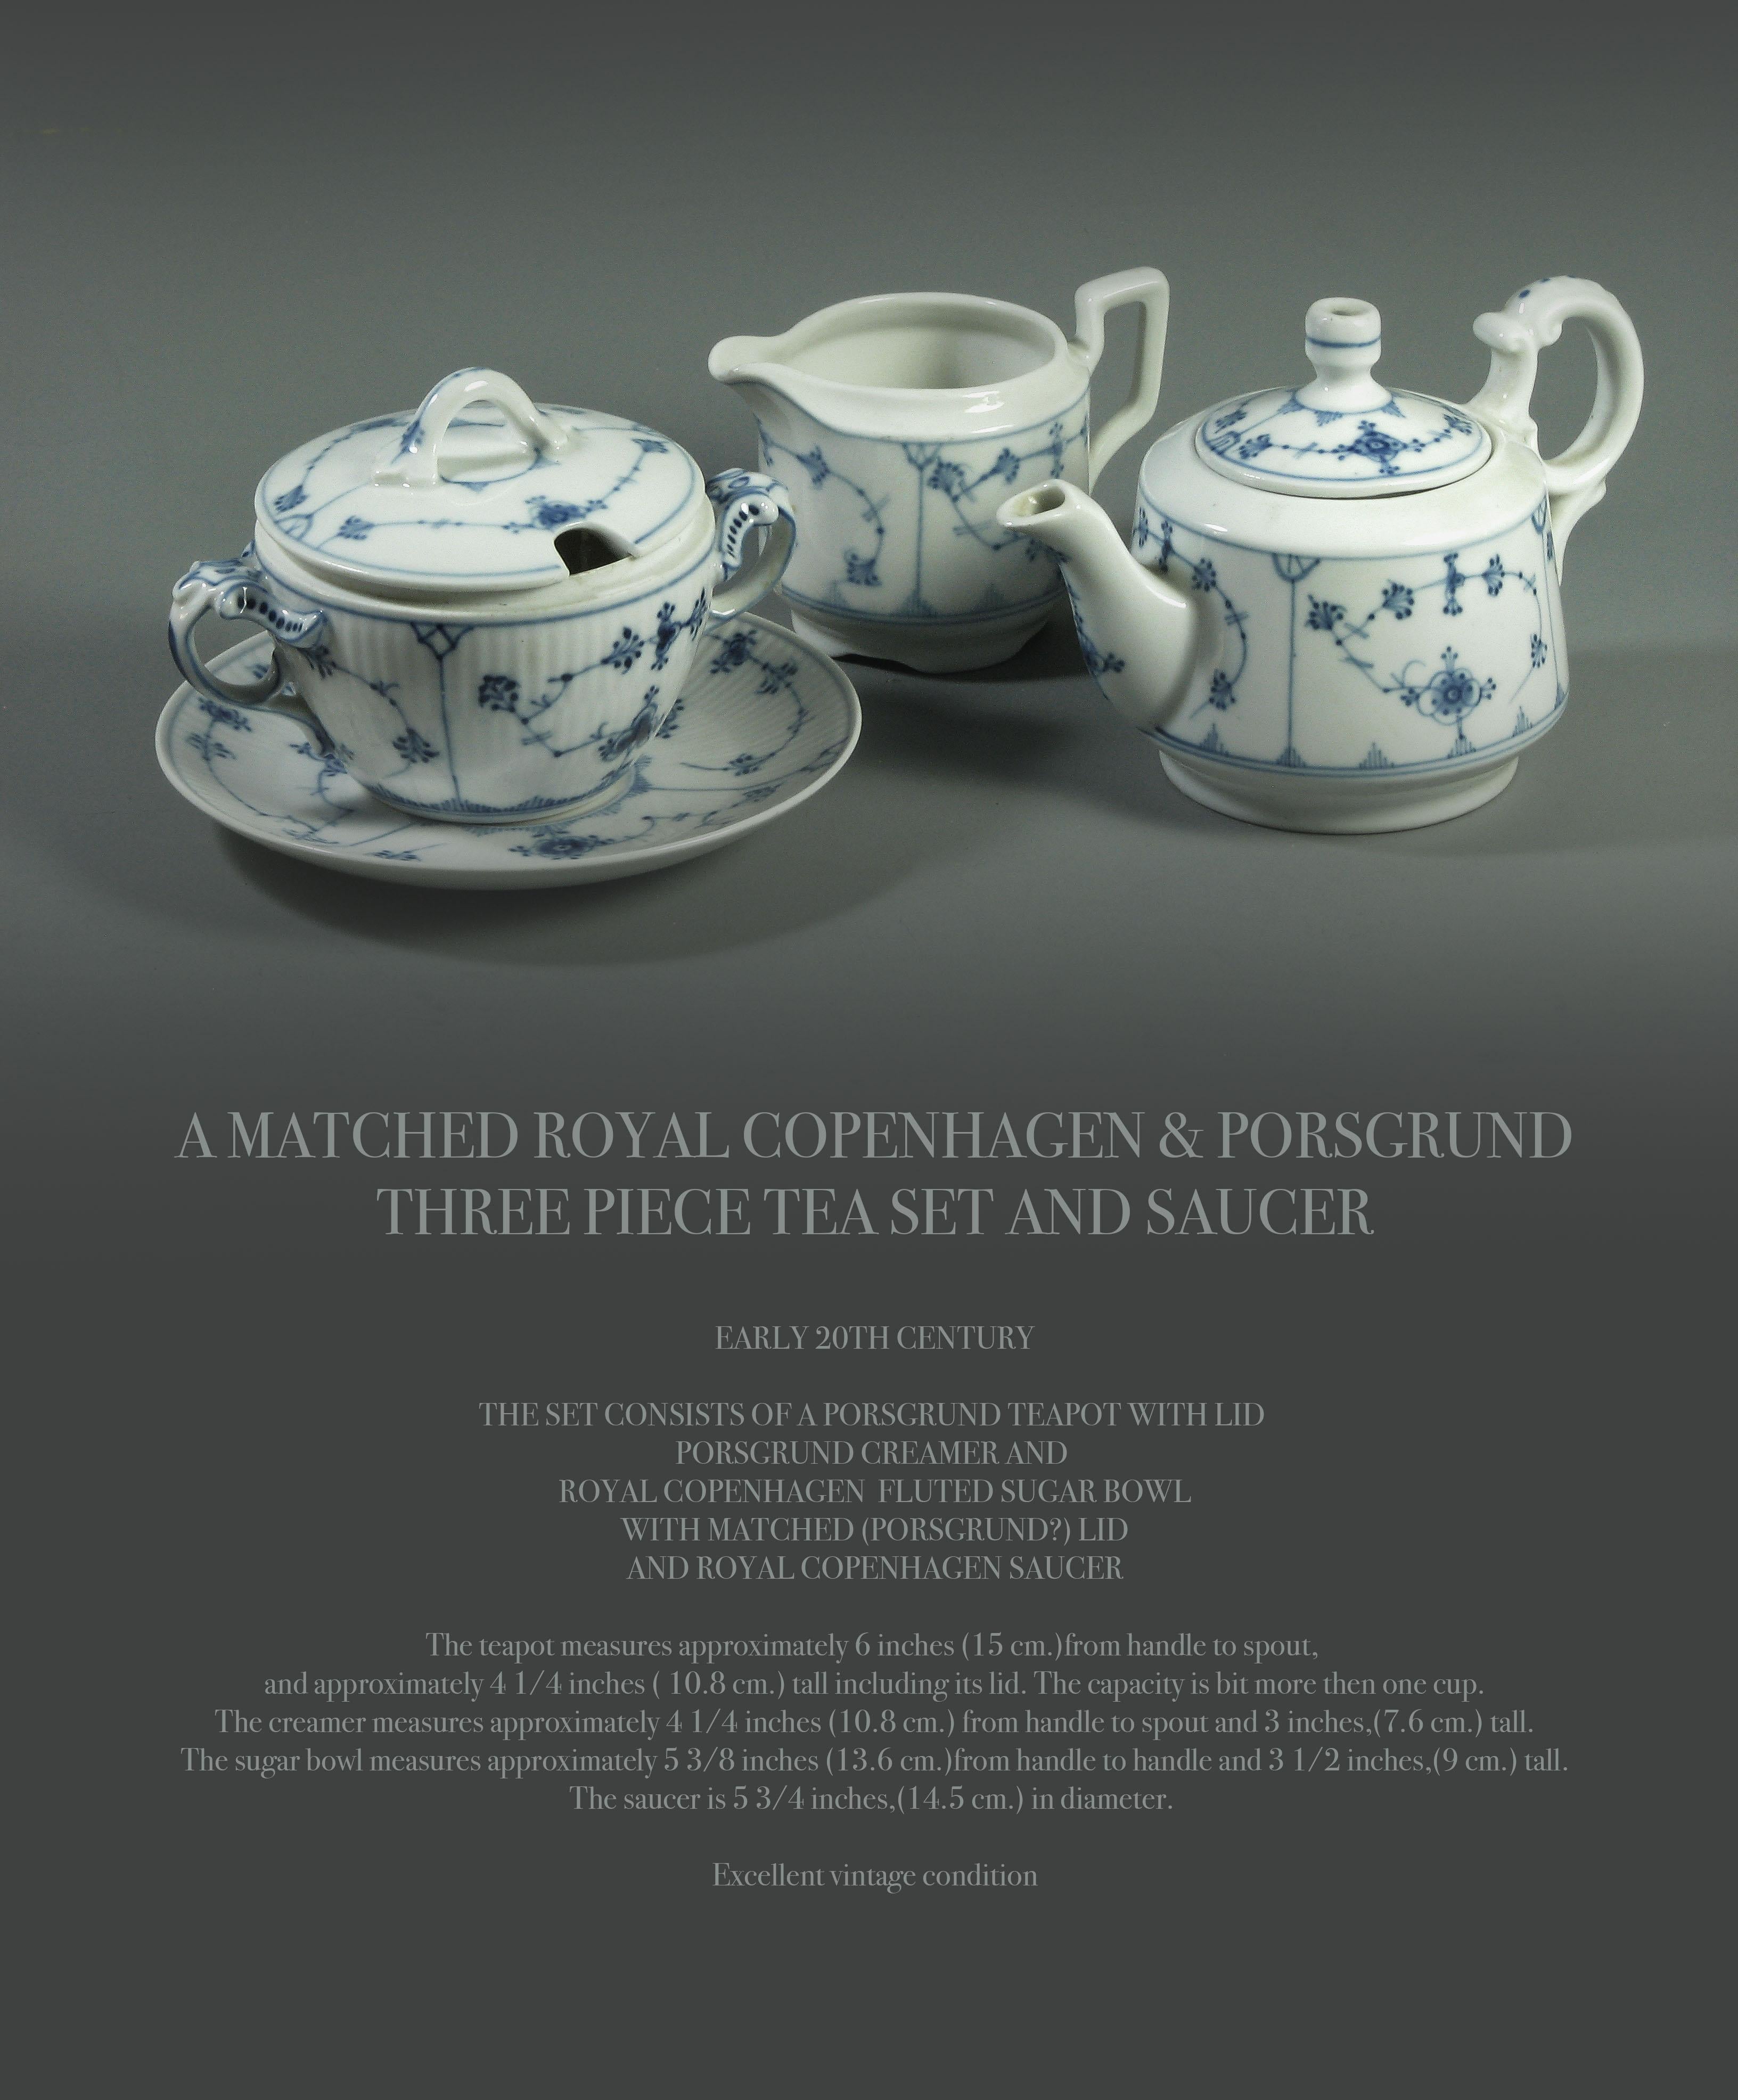 Royal Copenhagen et Porsgrund assortis
service à thé trois pièces et soucoupe.

Début du 20e siècle.

L'ensemble se compose d'une théière en porcelaine avec couvercle, d'un crémier en porcelaine et d'une théière en porcelaine avec couvercle.
sucrier